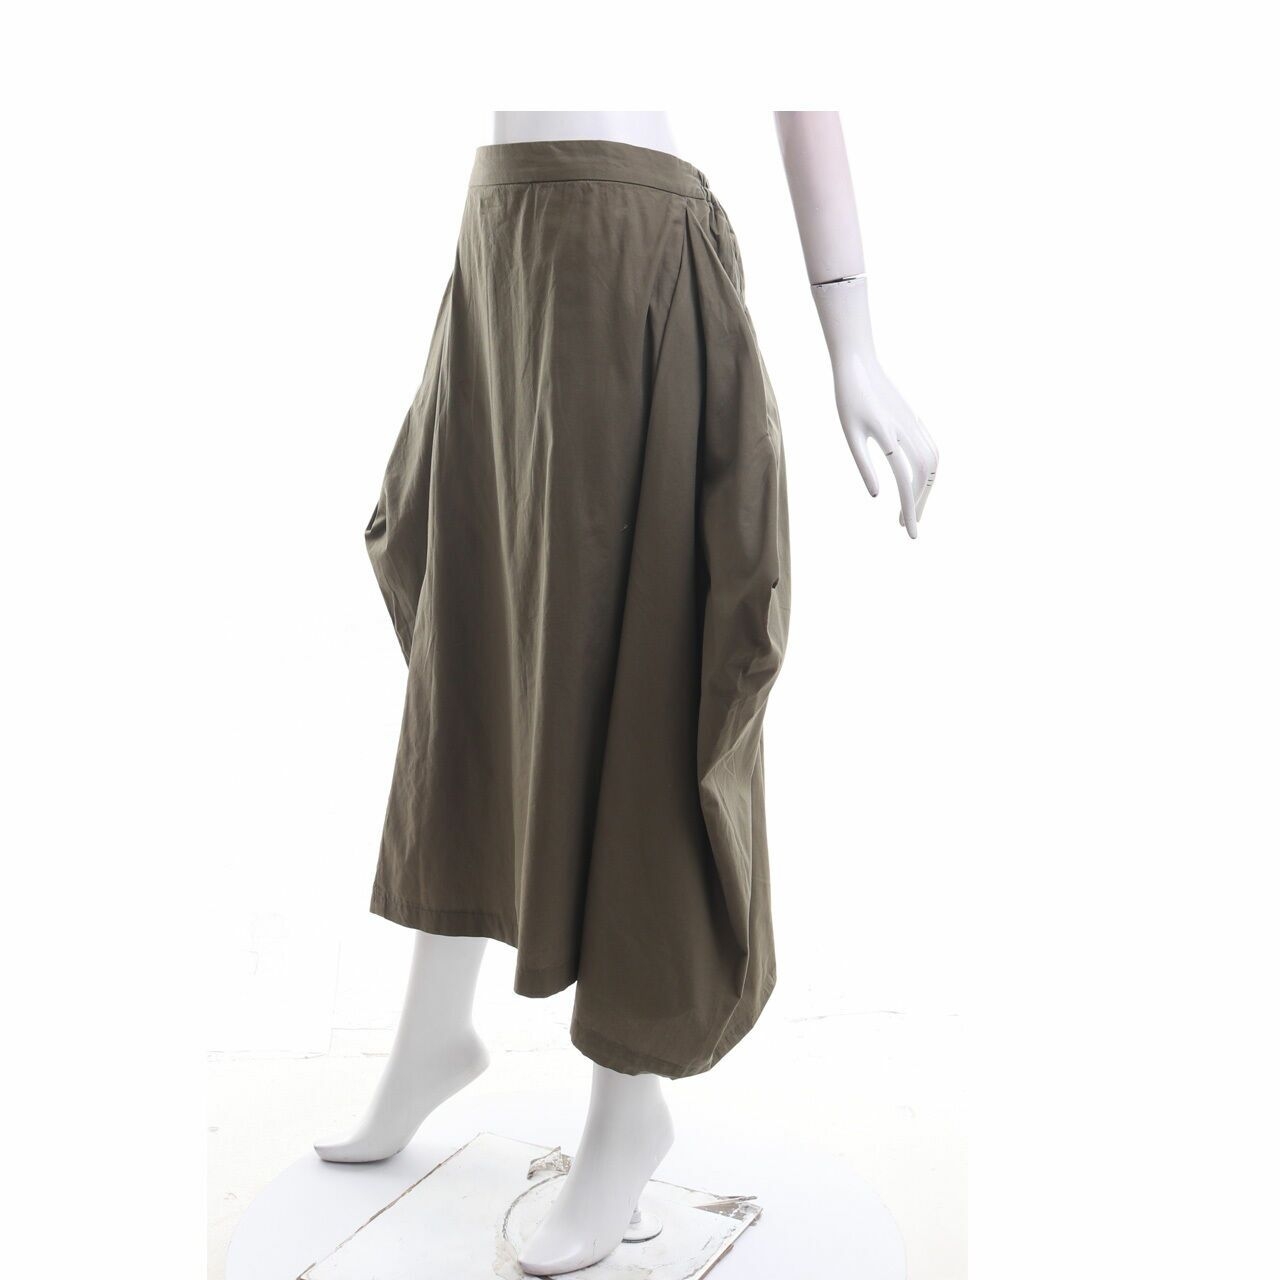 Maima Olive Maxi Skirt